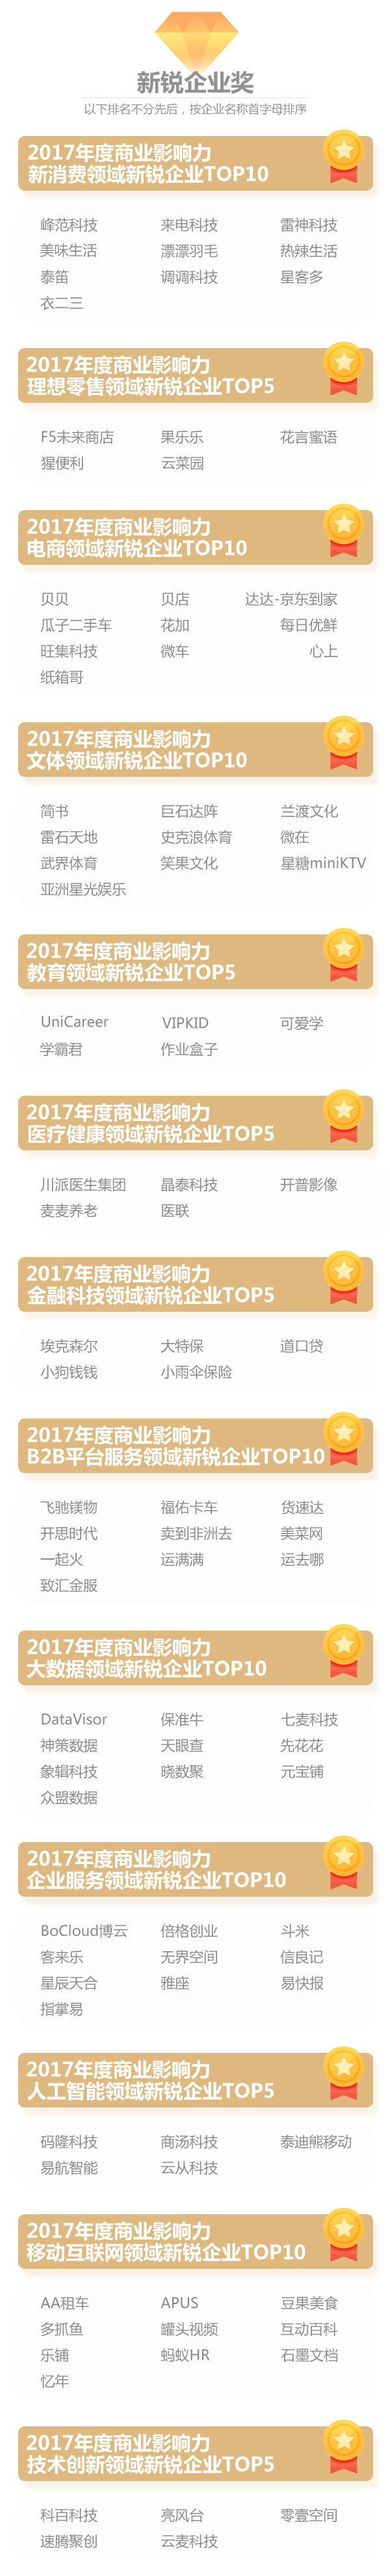 2017品途NBI影响力评选四大榜单震撼揭晓